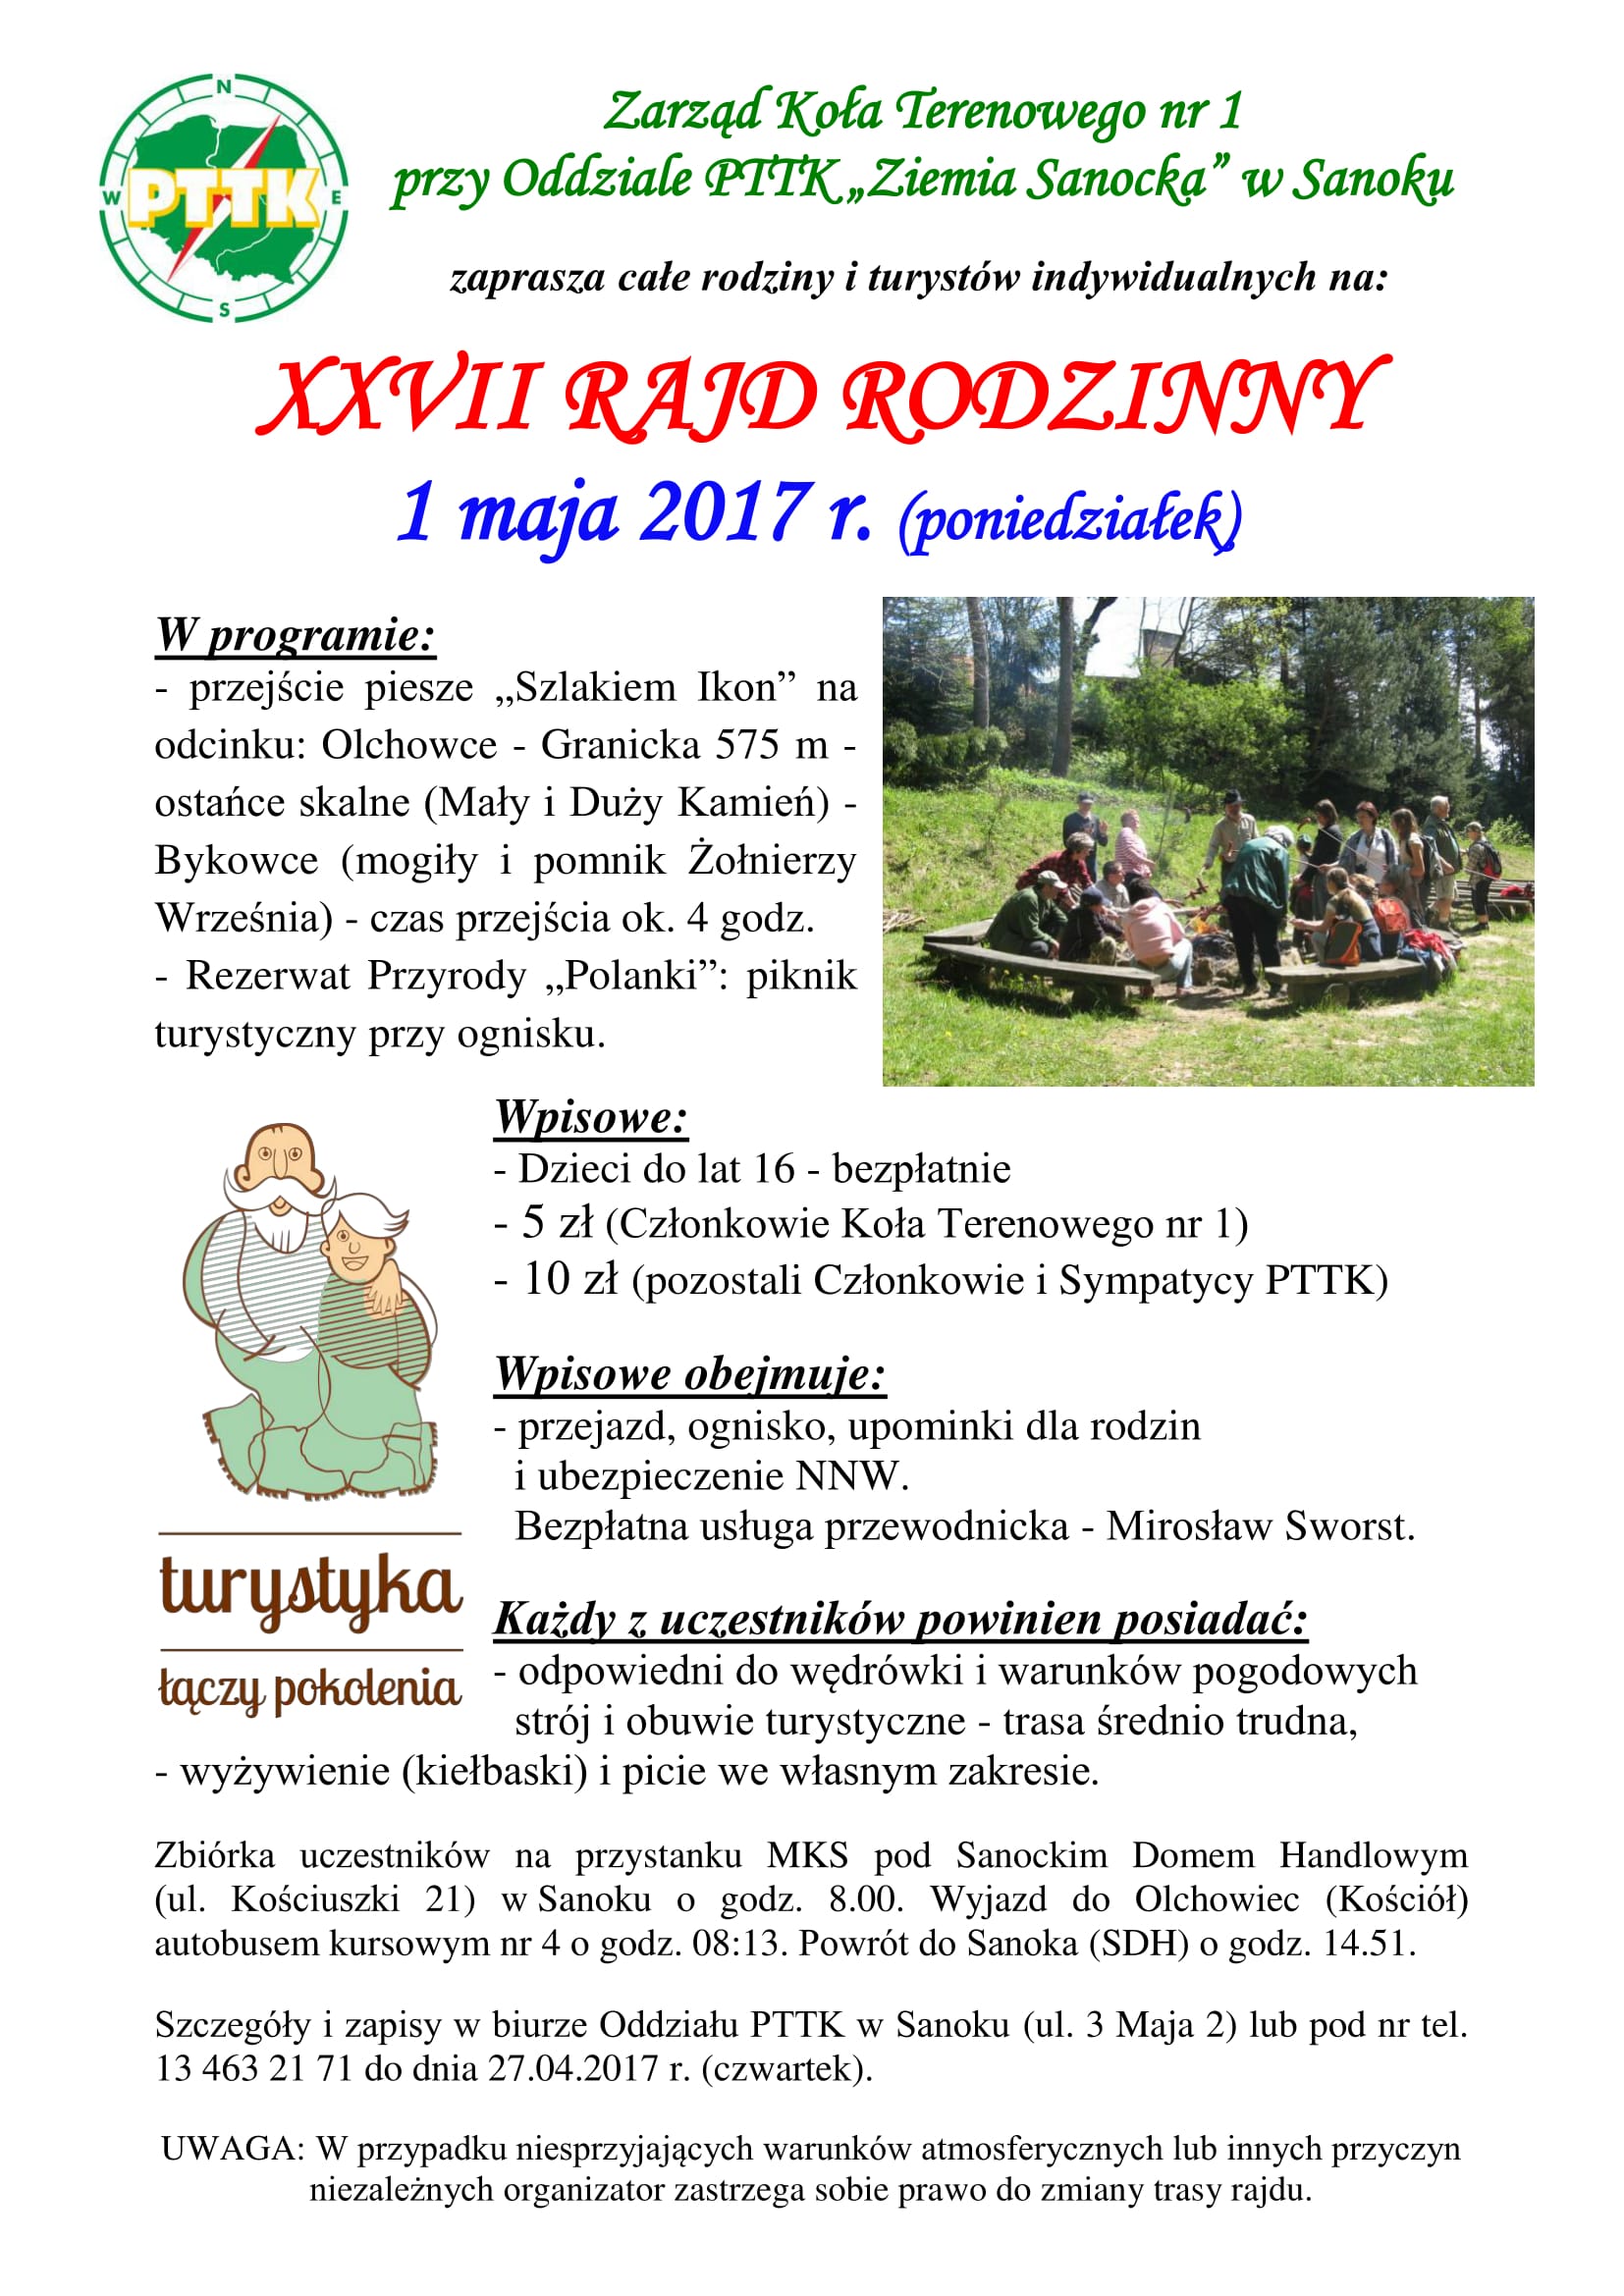 XXVII Rajd Rodzinny 01 05 2017 r  - afisz-1